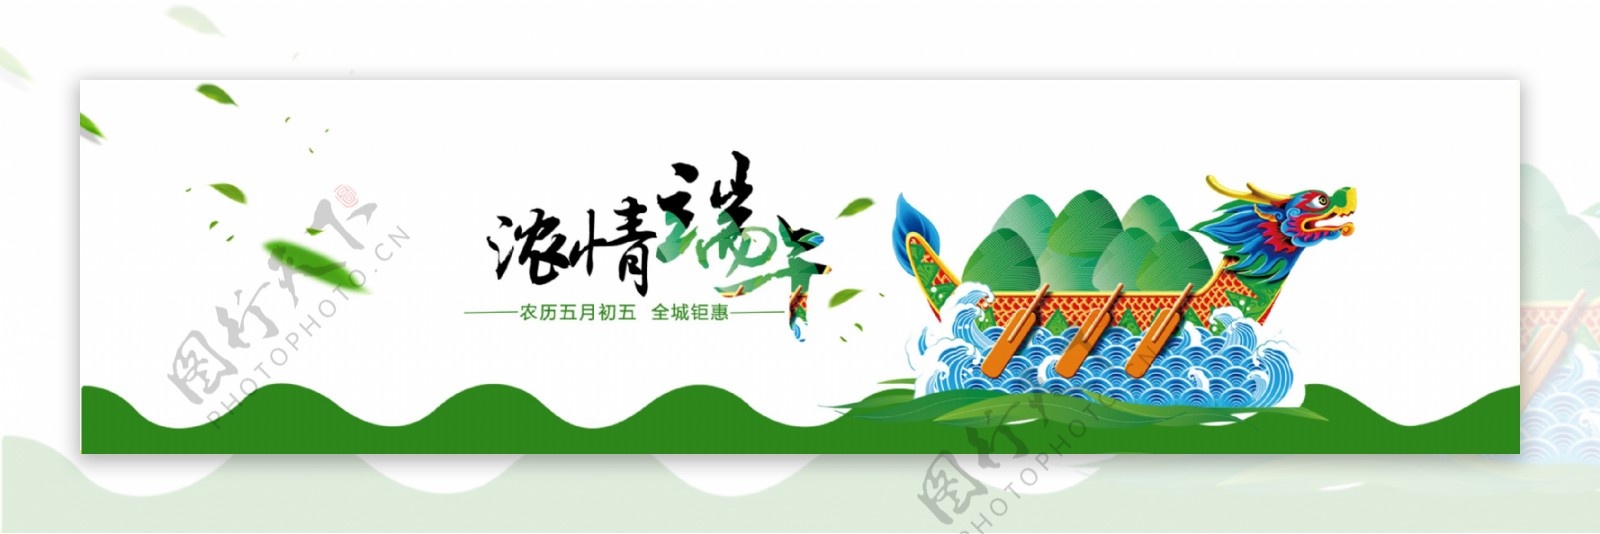 小清新中国风端午节banner背景